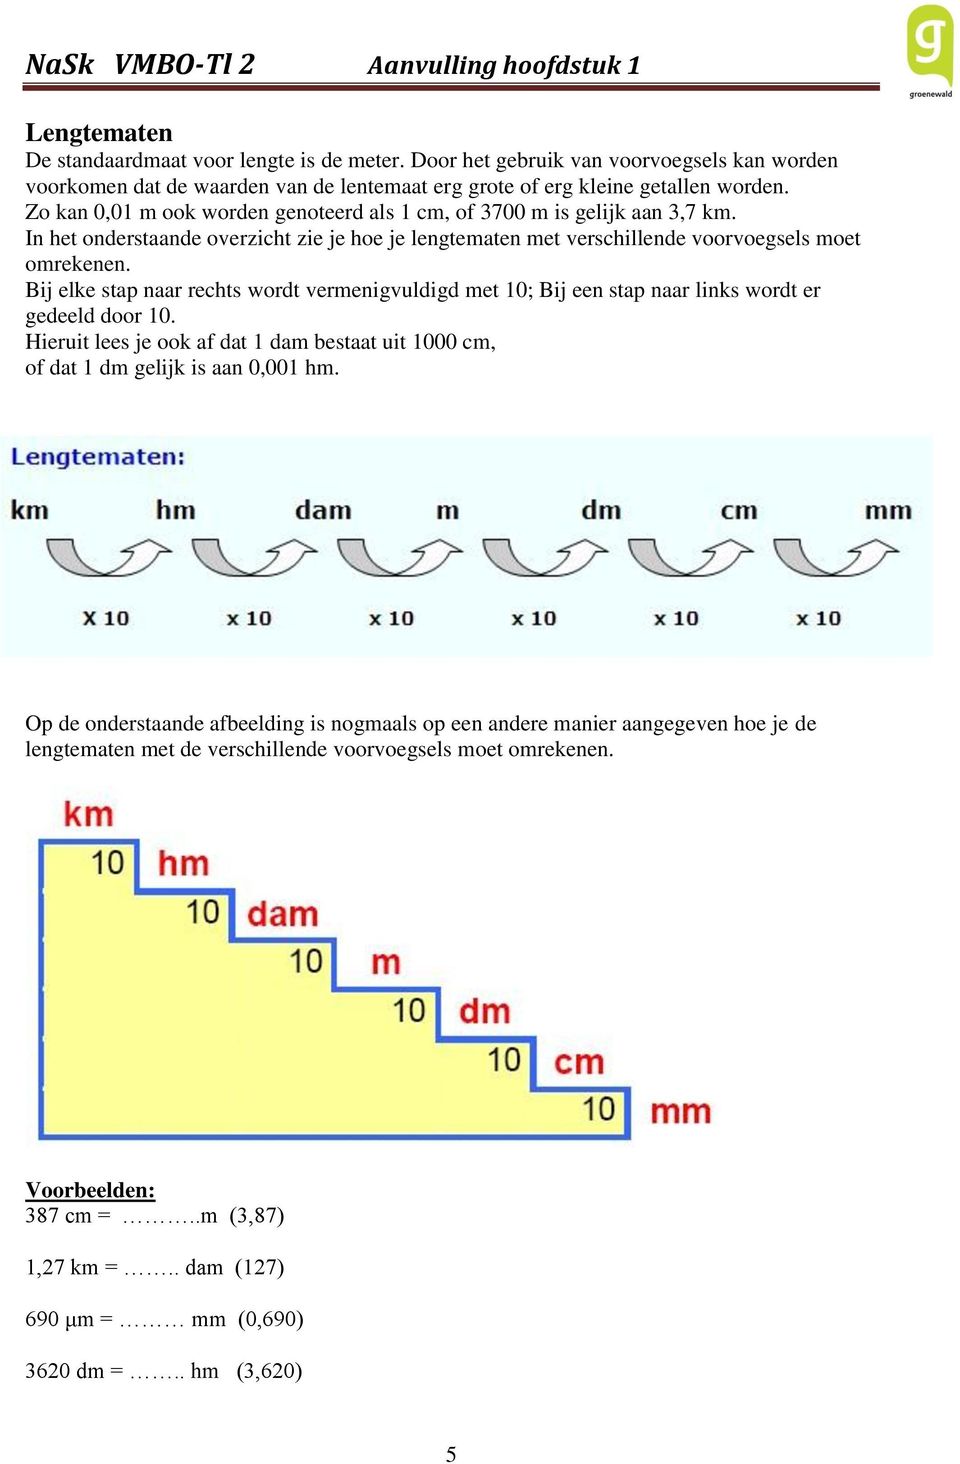 Bij elke stap naar rechts wordt vermenigvuldigd met 10; Bij een stap naar links wordt er gedeeld door 10. Hieruit lees je ook af dat 1 dam bestaat uit 1000 cm, of dat 1 dm gelijk is aan 0,001 hm.